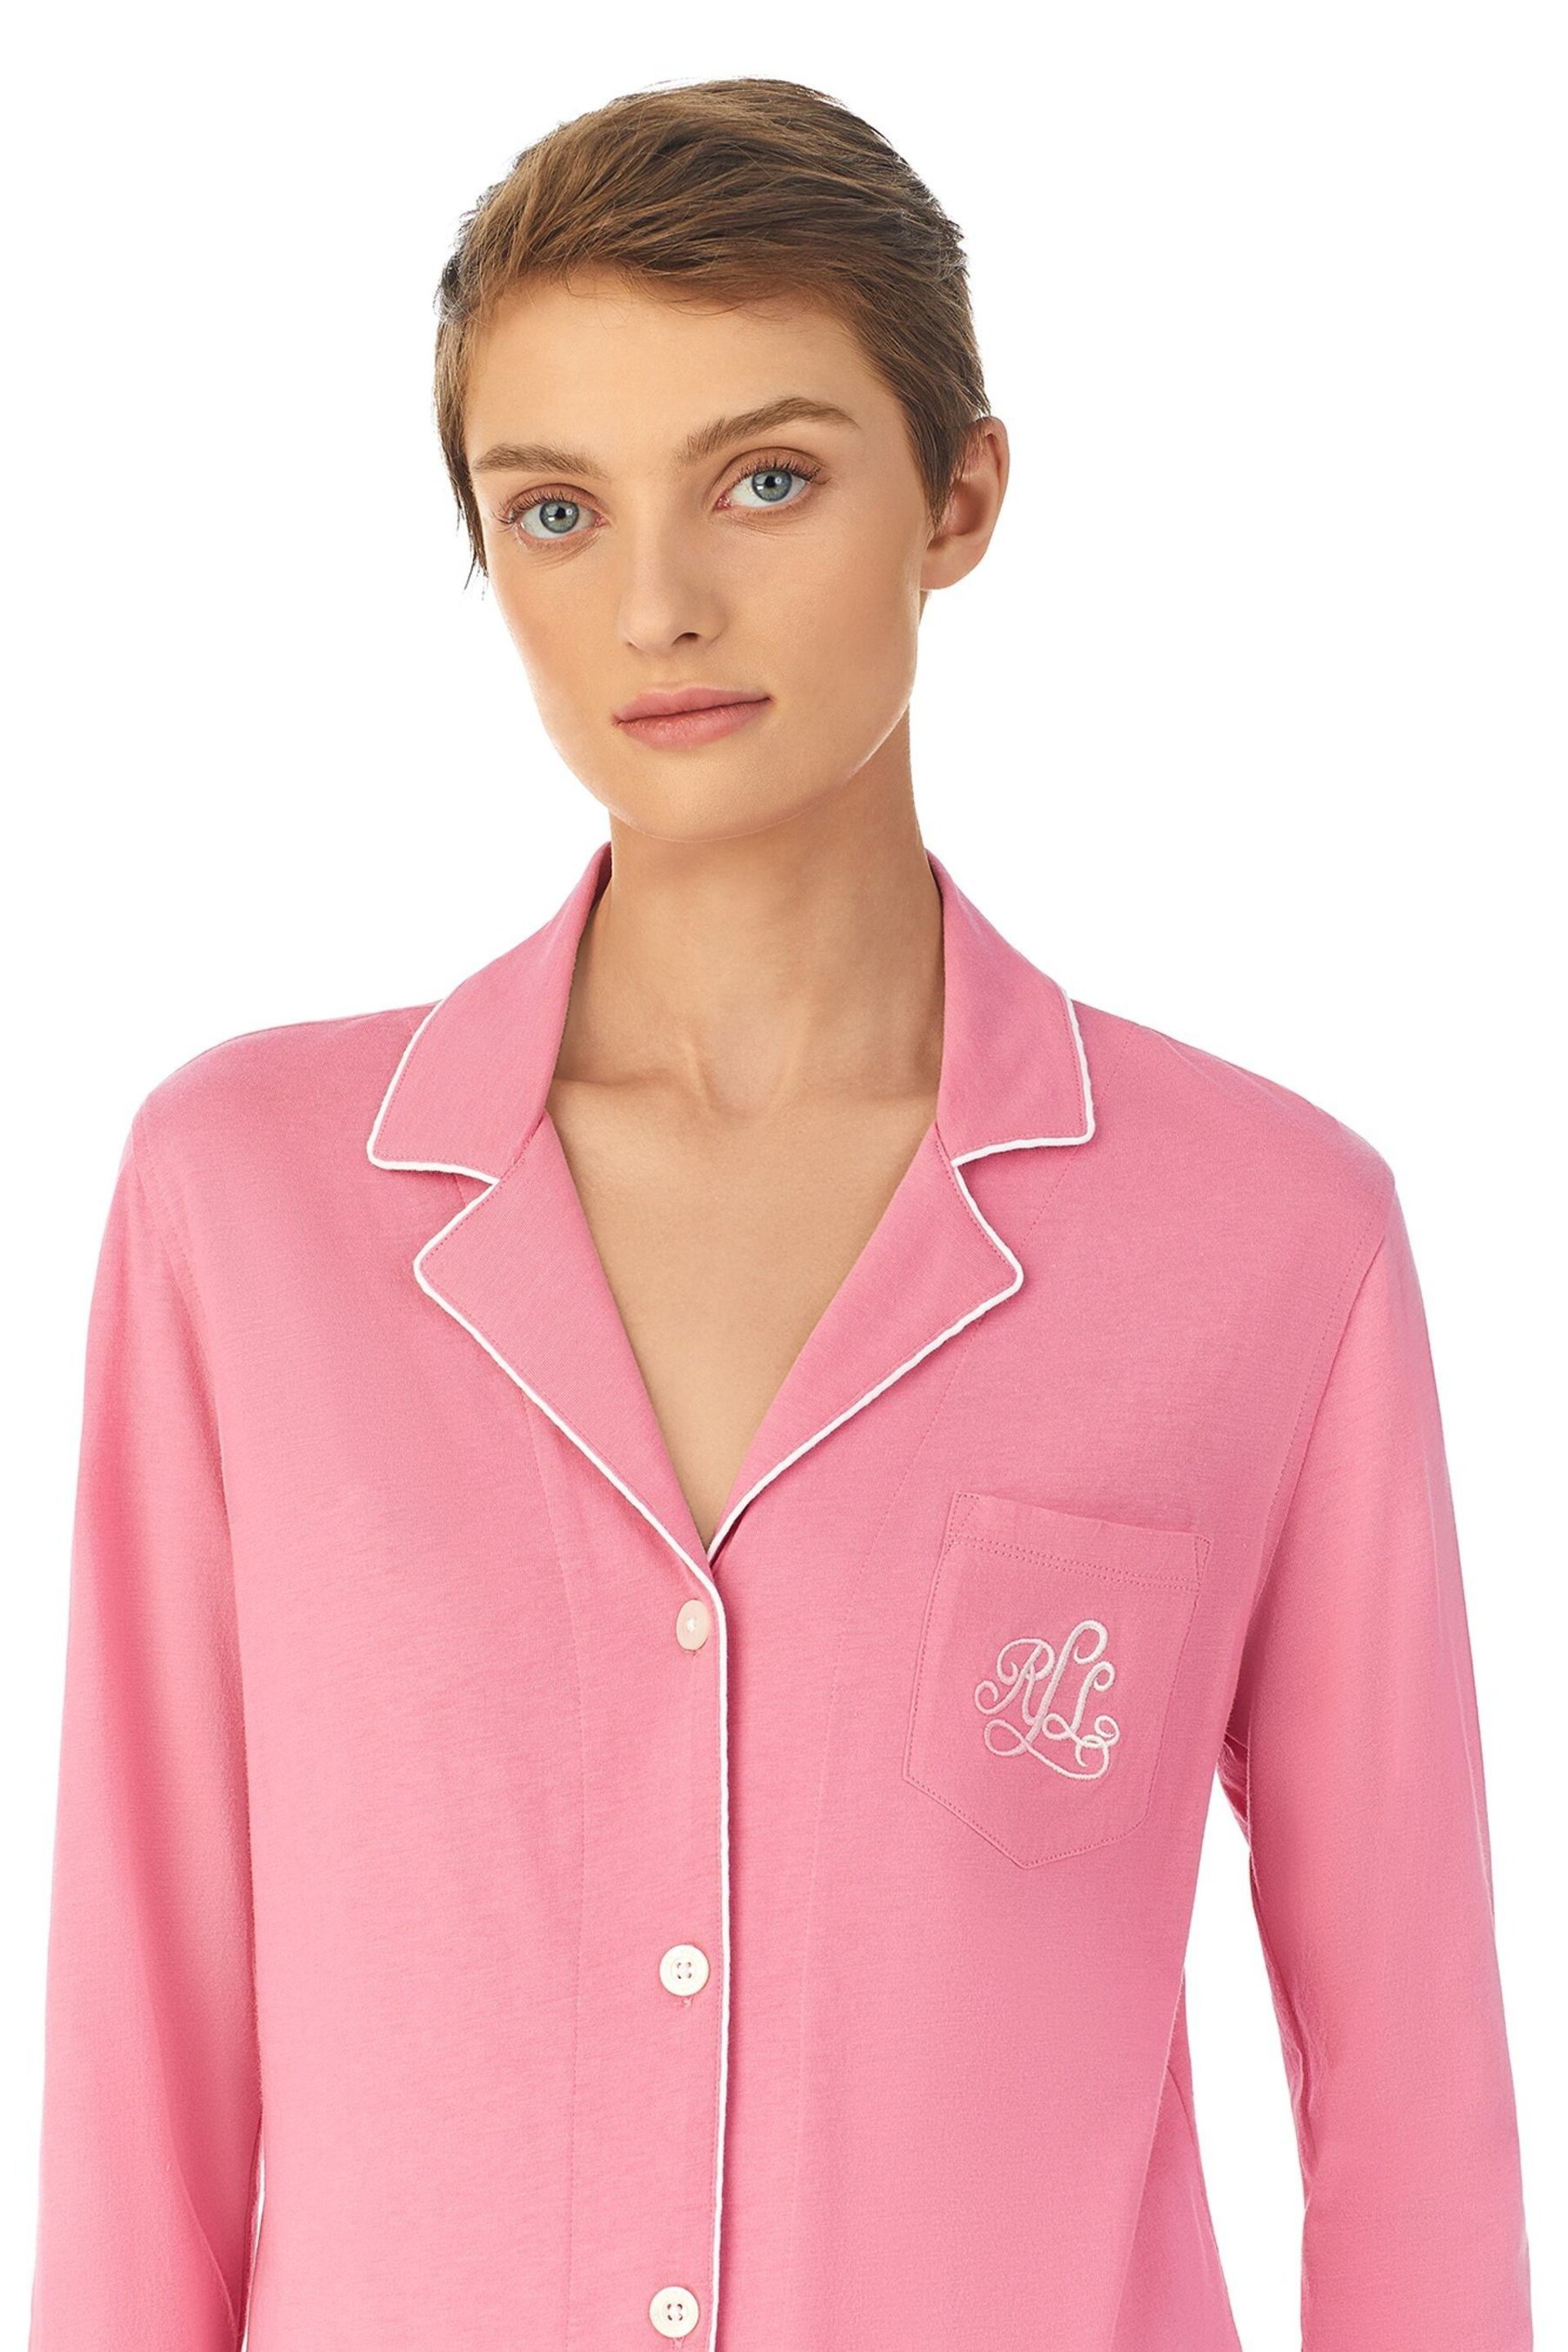 Lauren Ralph Lauren Pink Cotton Long Sleeve Pyjama Set - Image 3 of 3